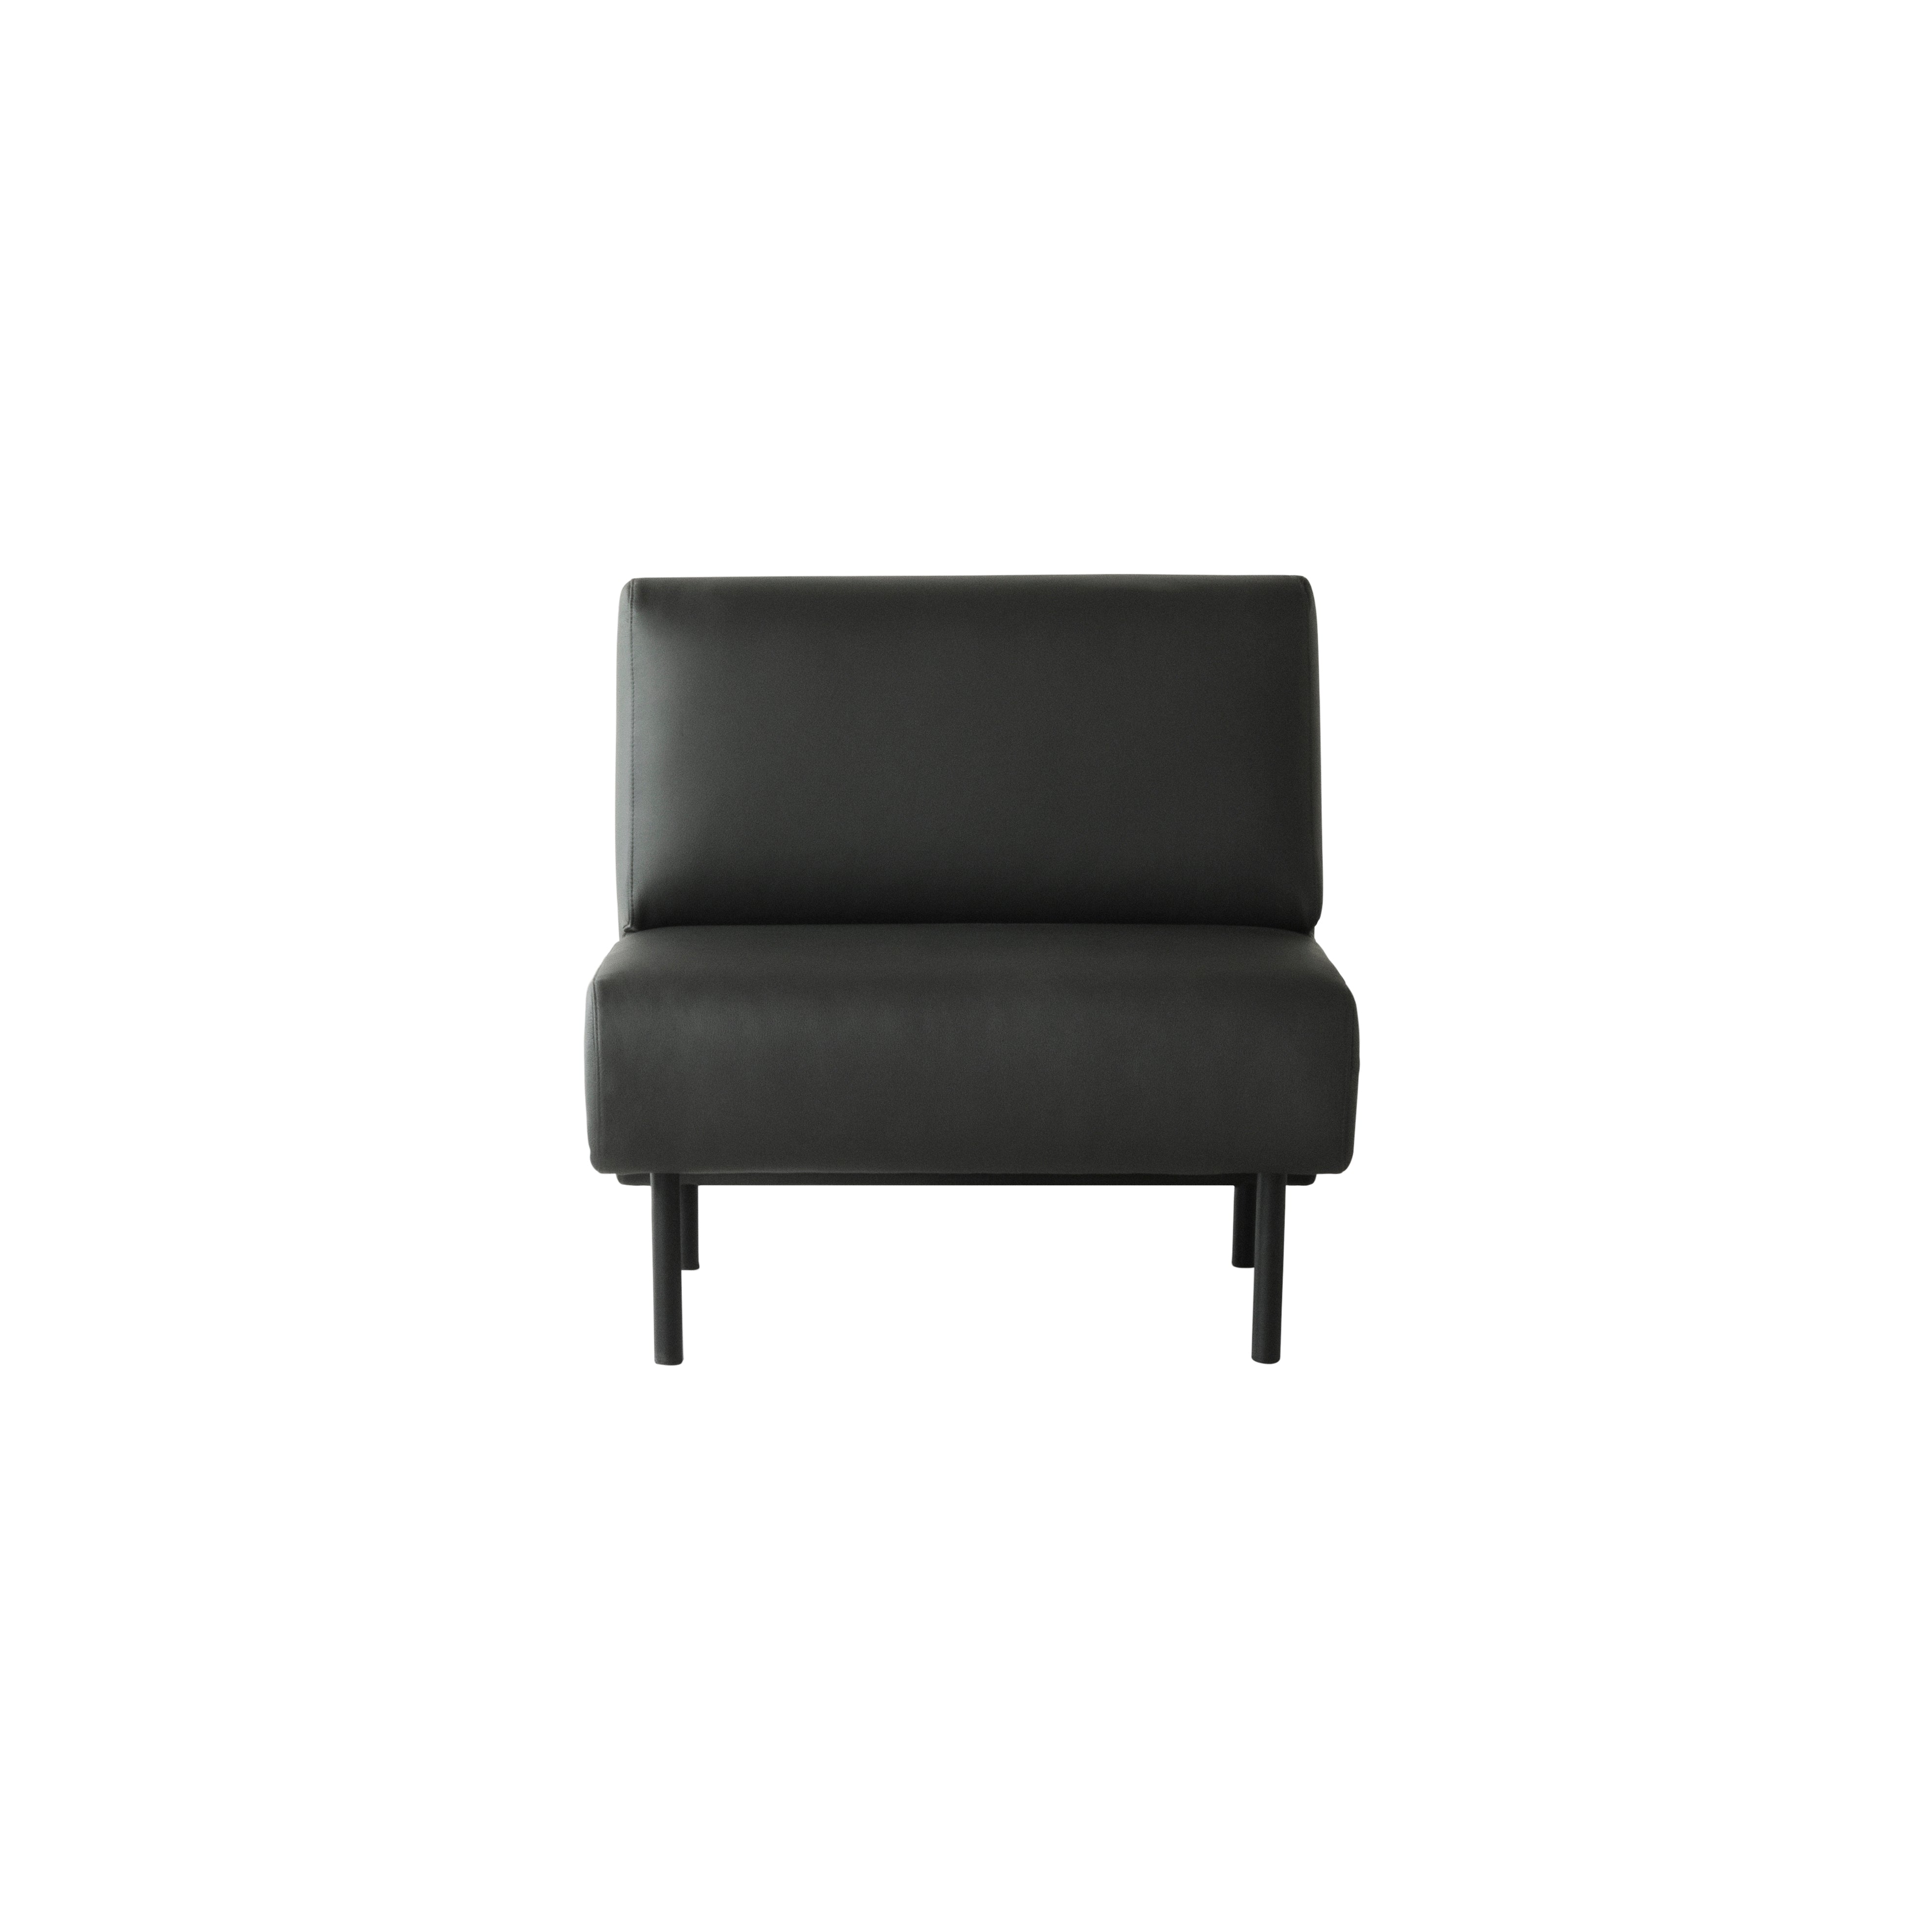 Frame Sofa: Small - 31.5